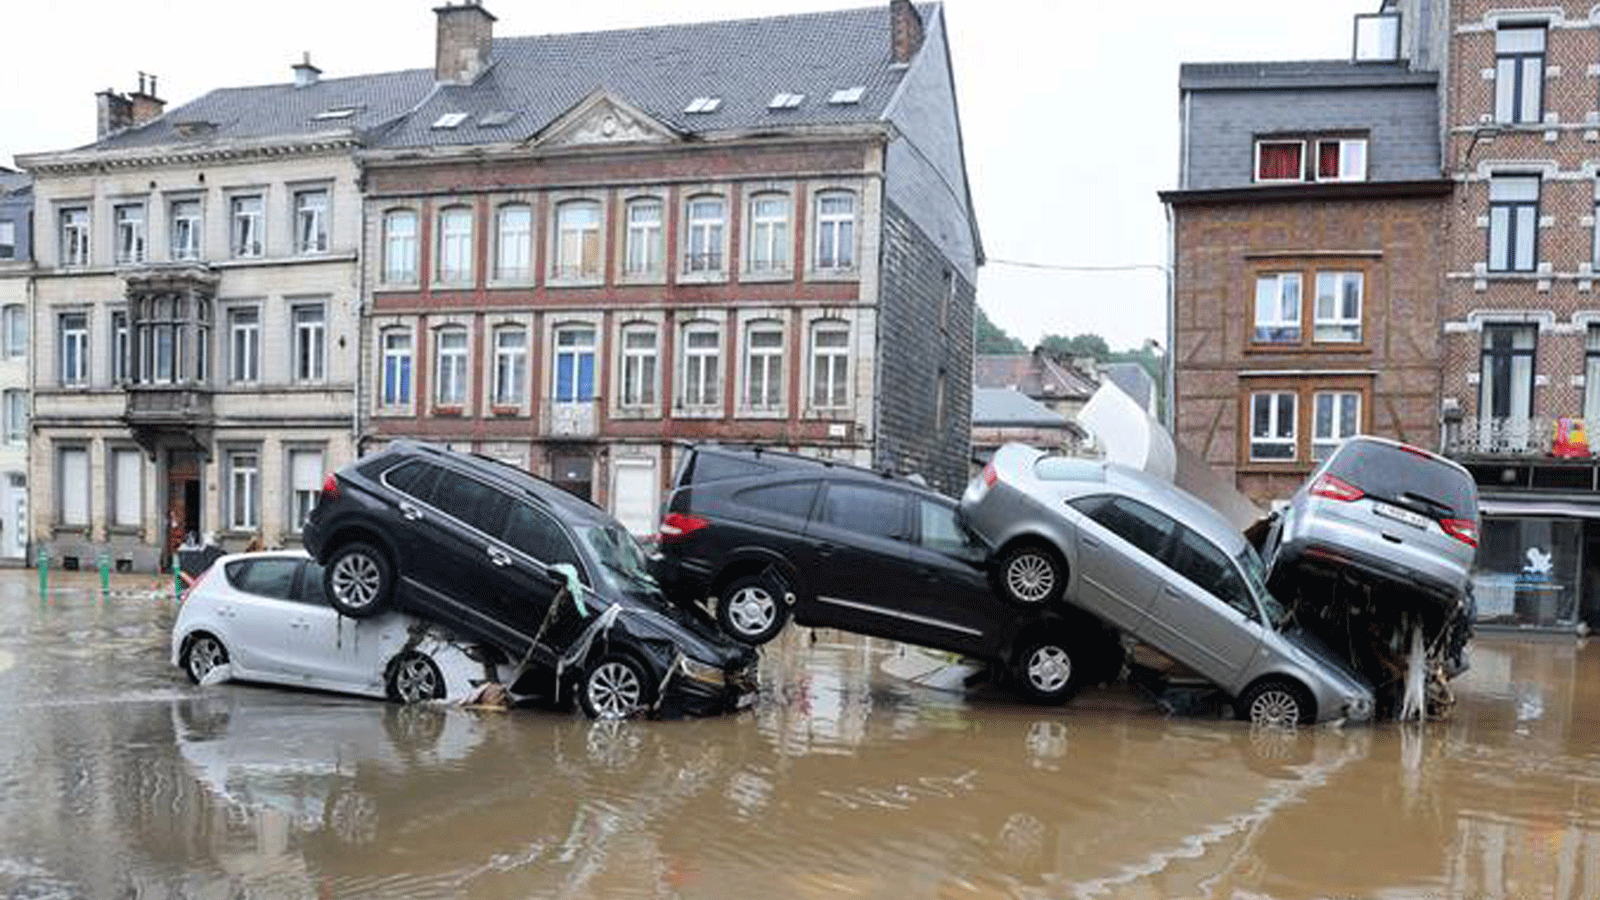 الفيضانات تجتاح شوارع في بلجيكا والسيارات تنال نصيبها من الضرر